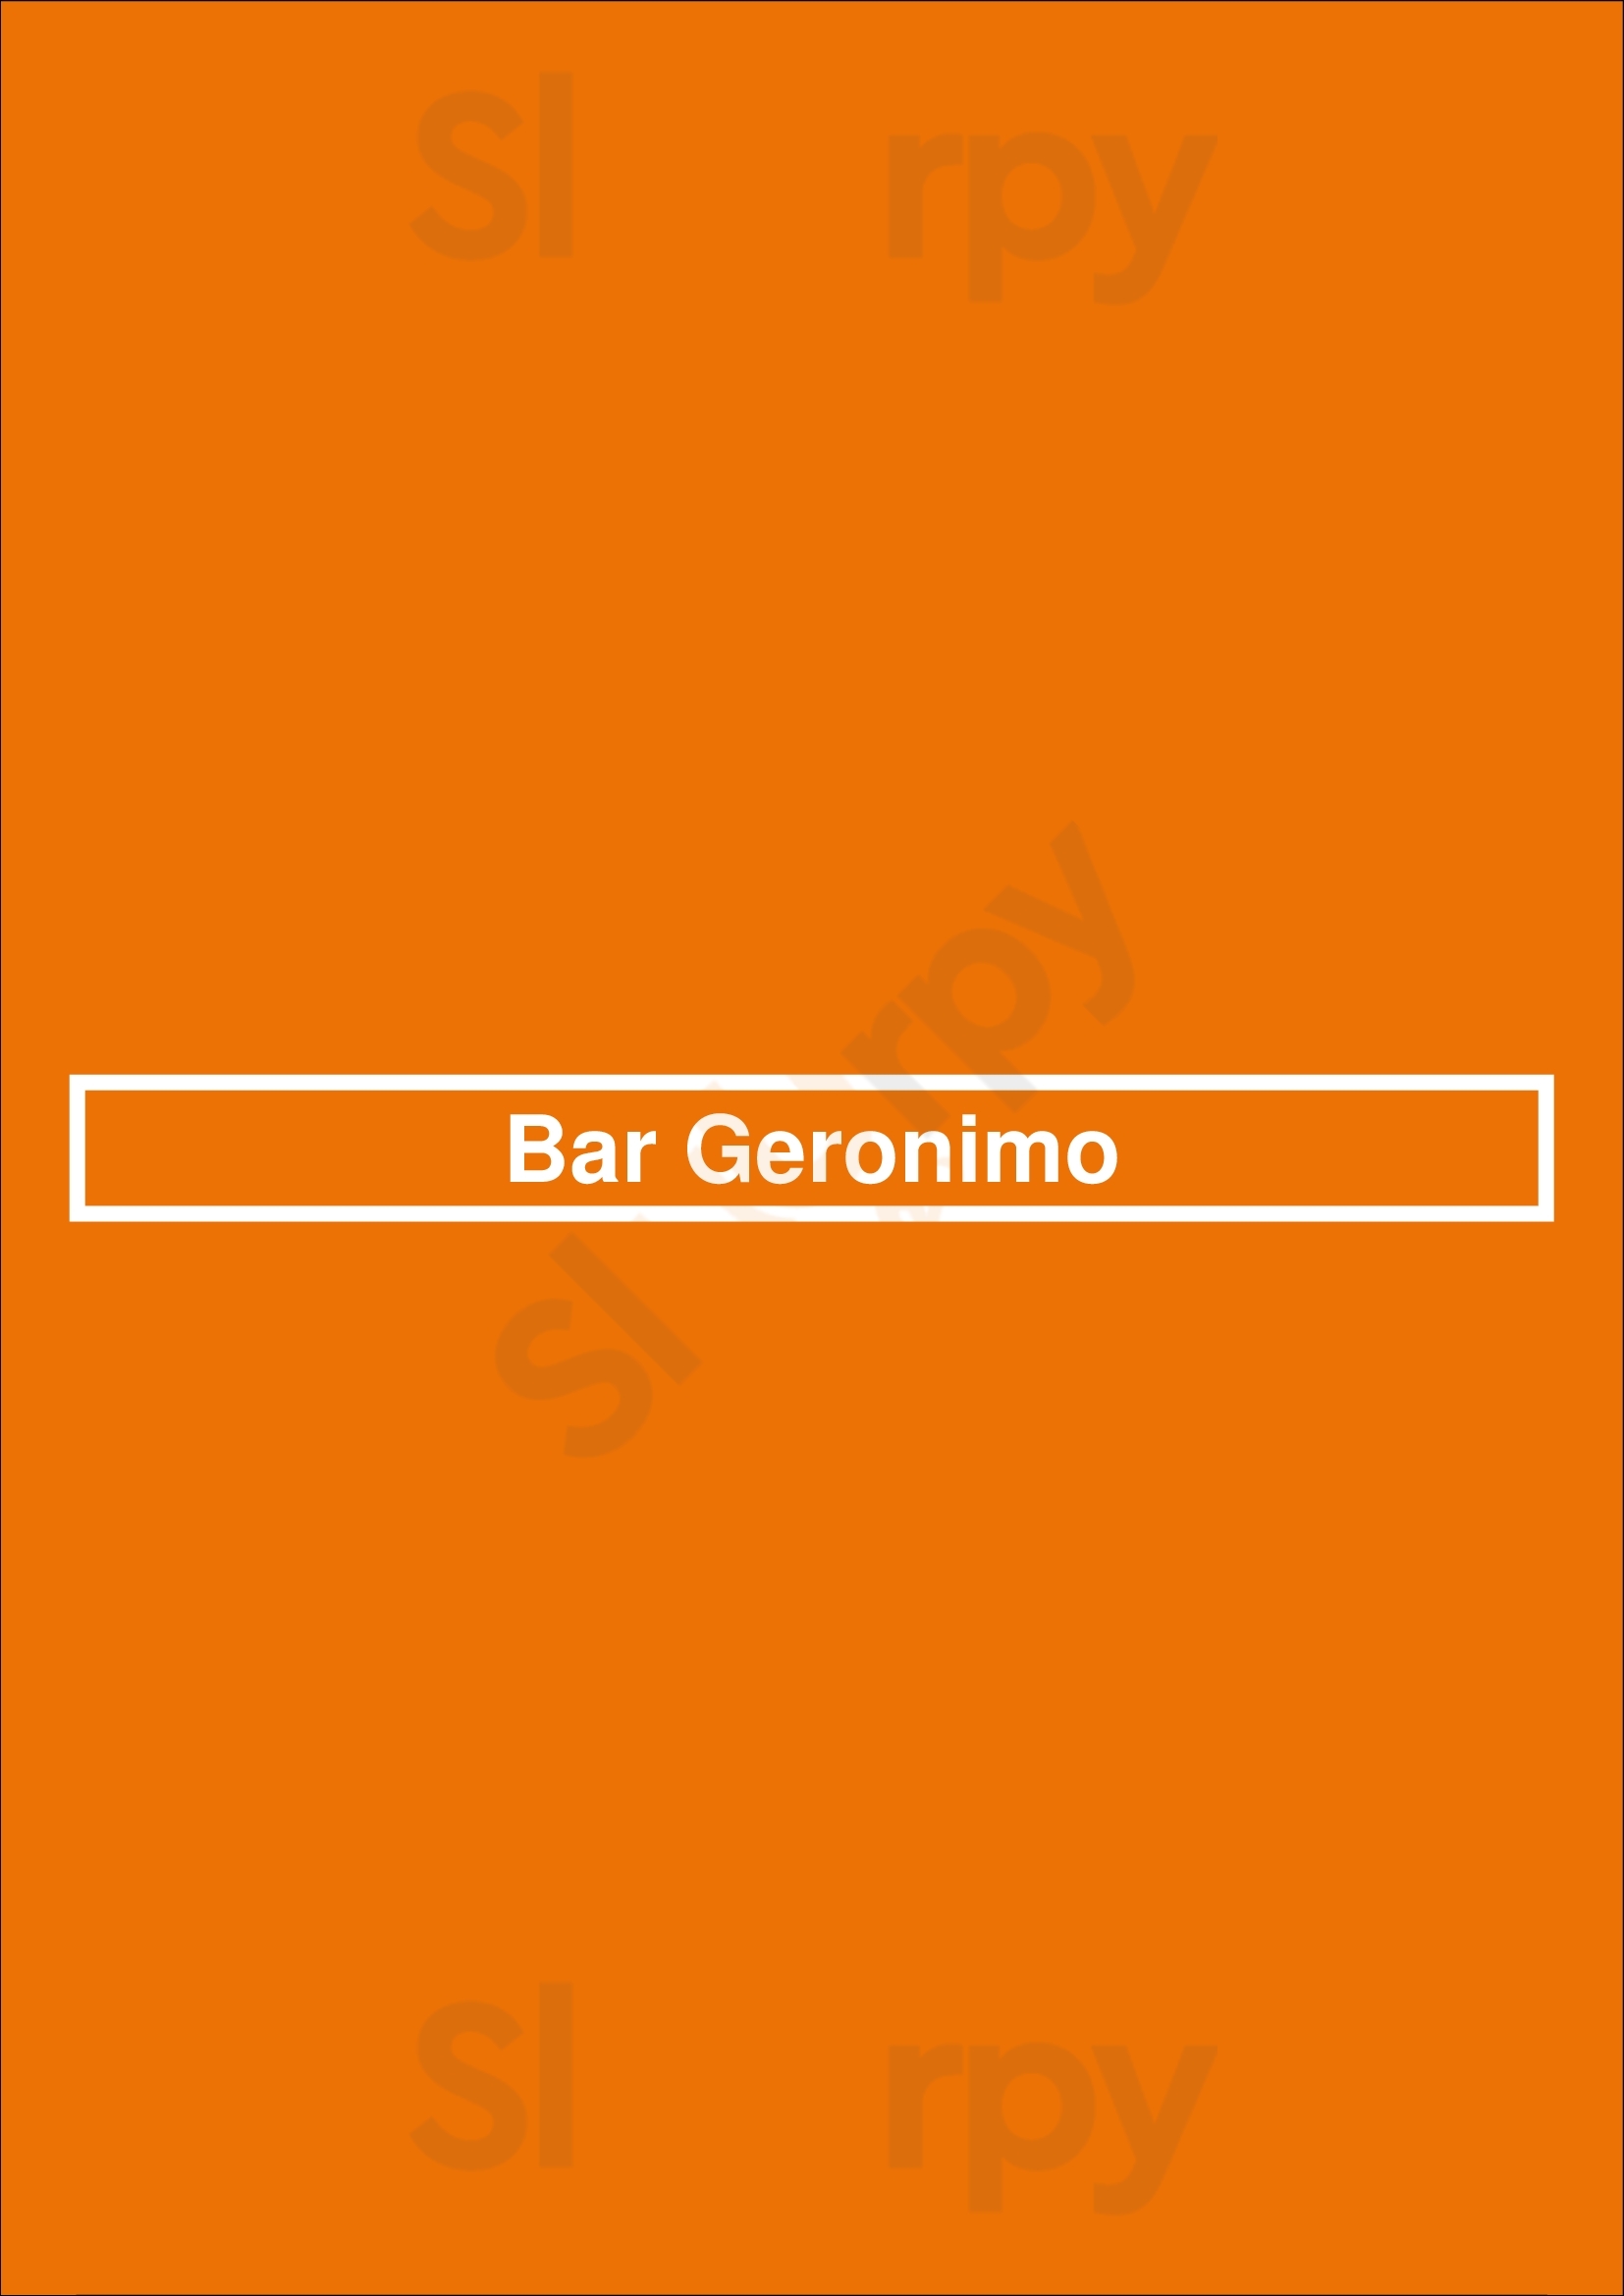 Bar Geronimo Buenos Aires Menu - 1